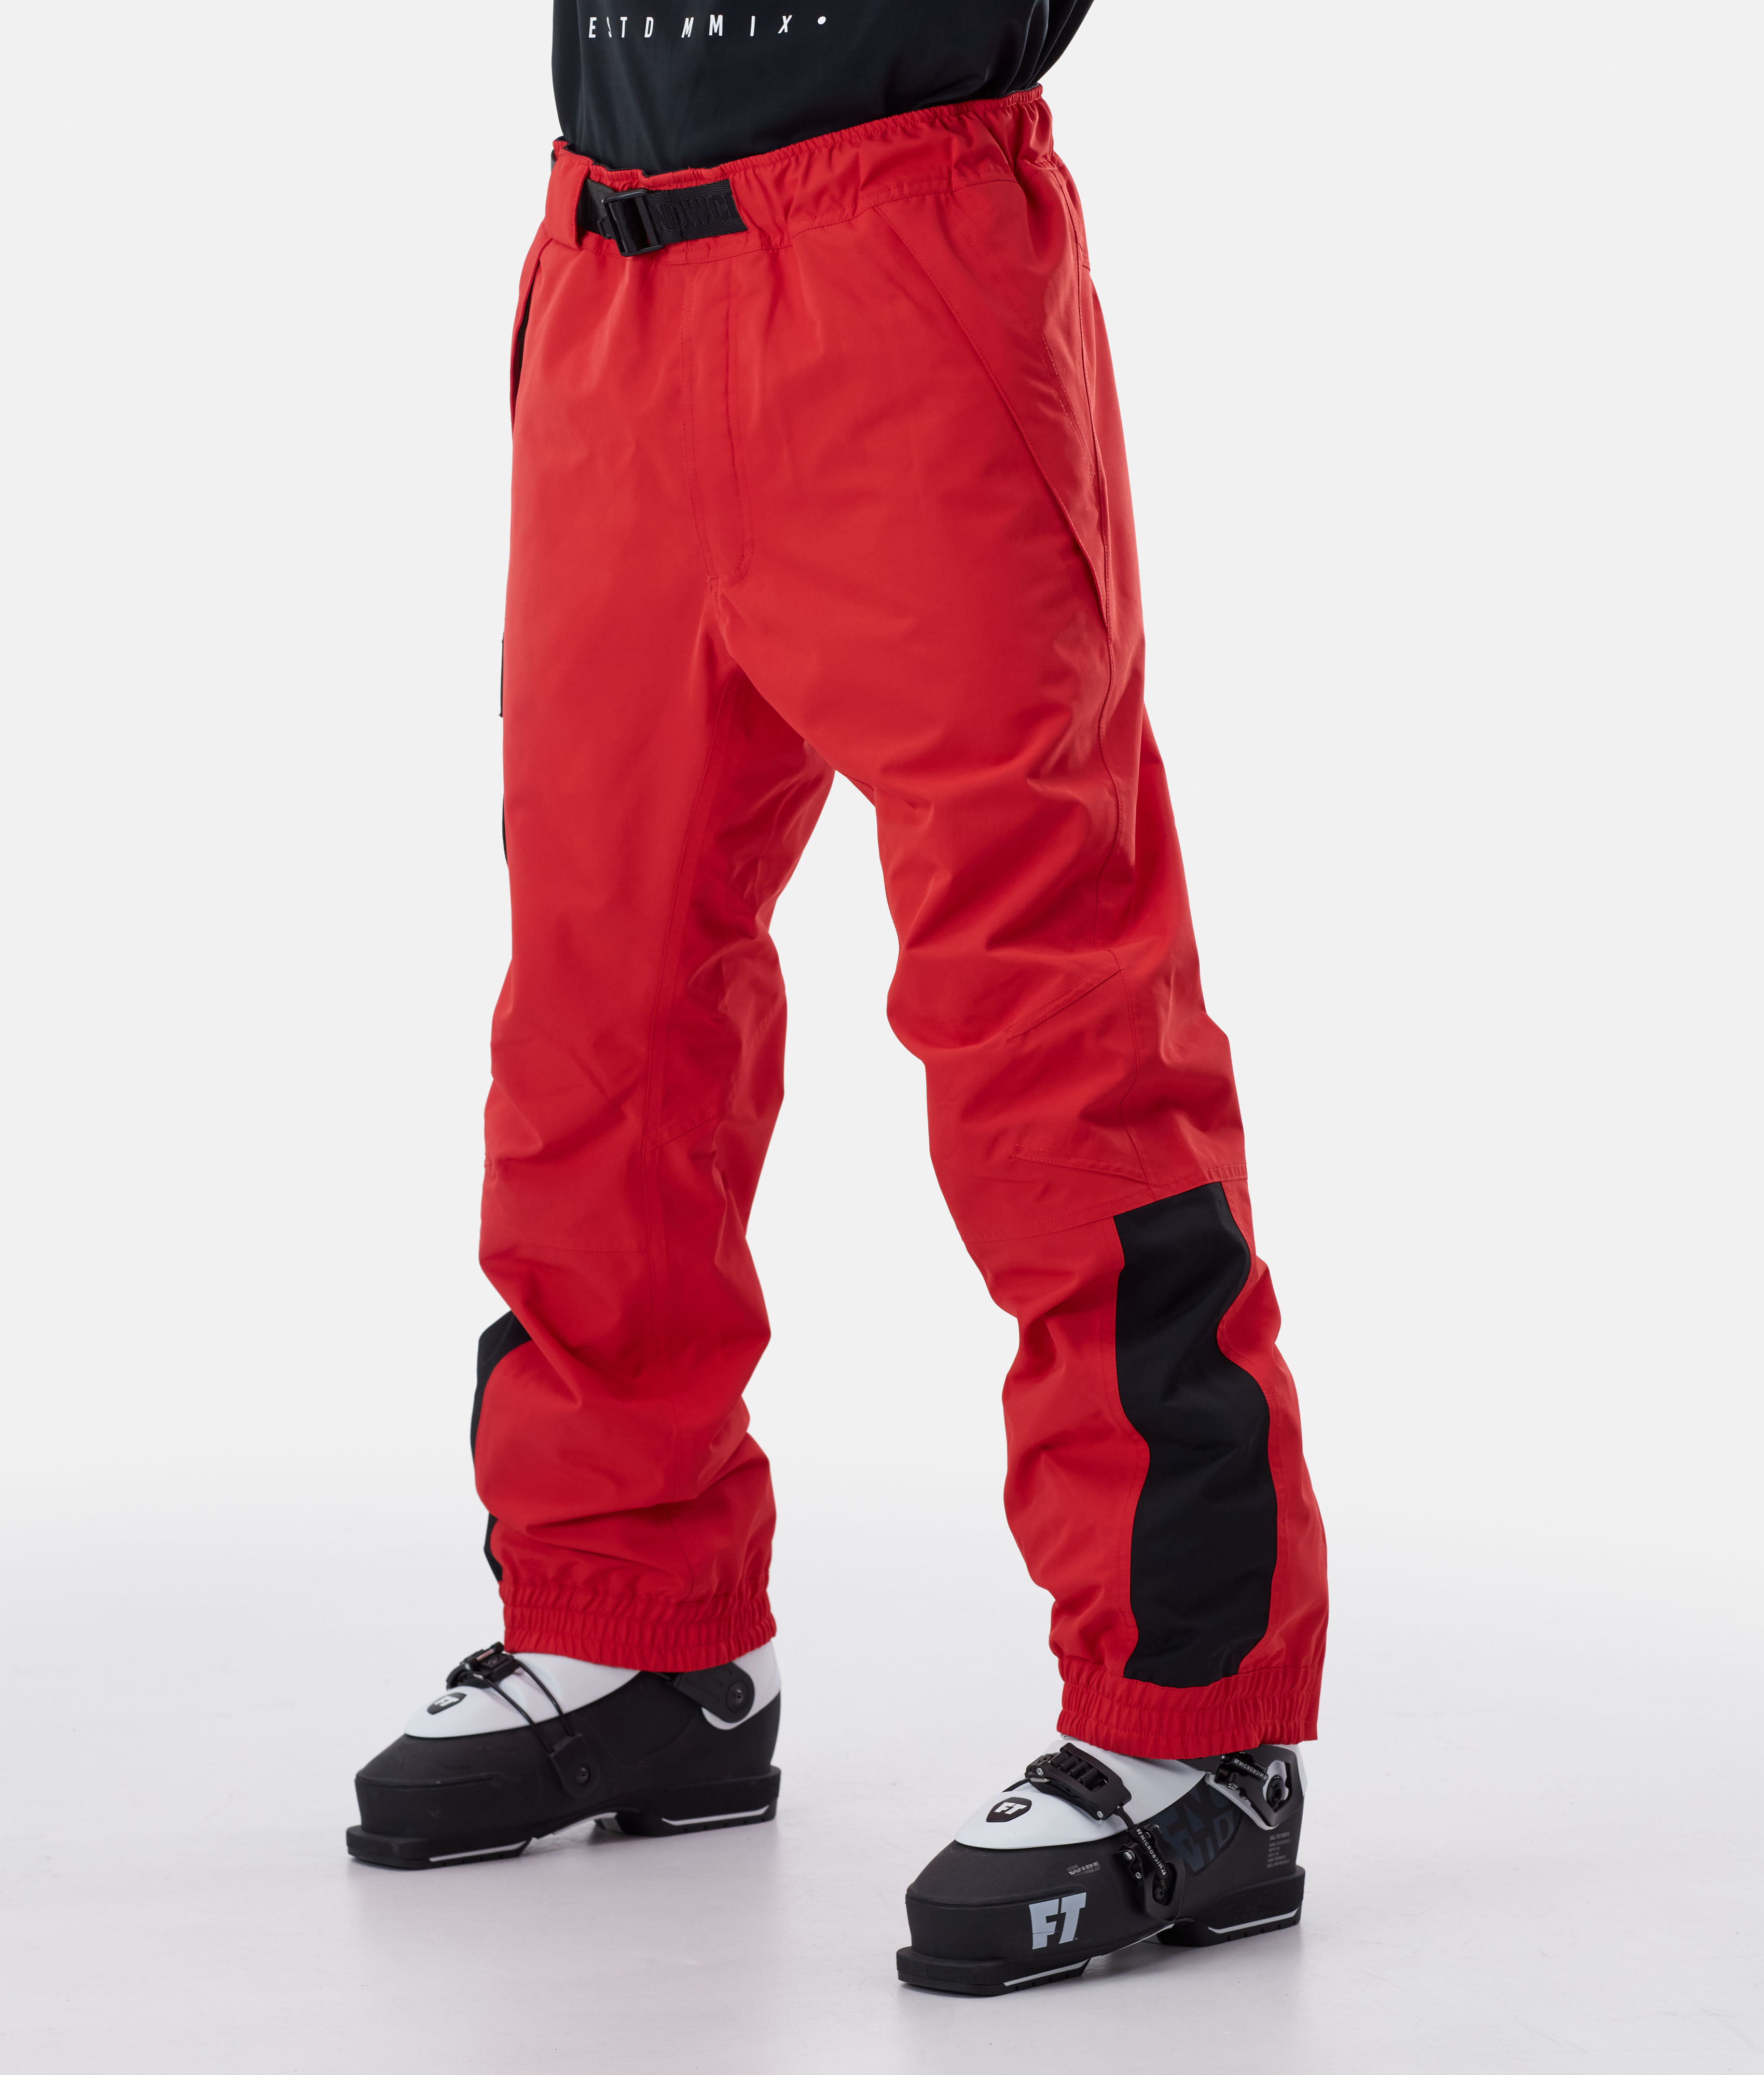 Dope JT Blizzard 2020 Men's Ski Pants Red